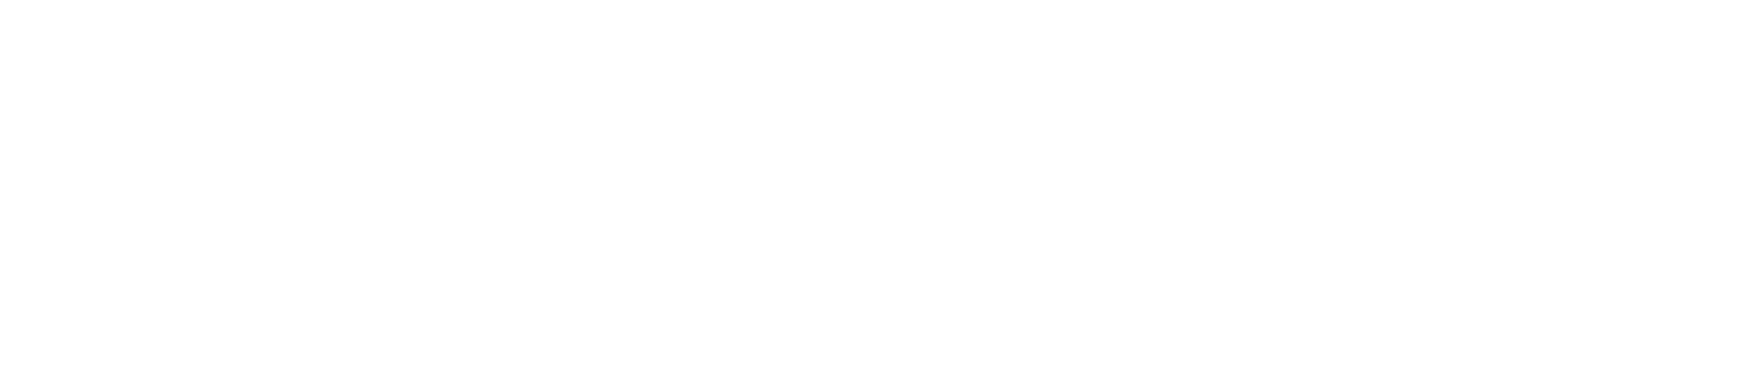 Zenefits Logo - zenefits-logo-white - Fabrice Grinda